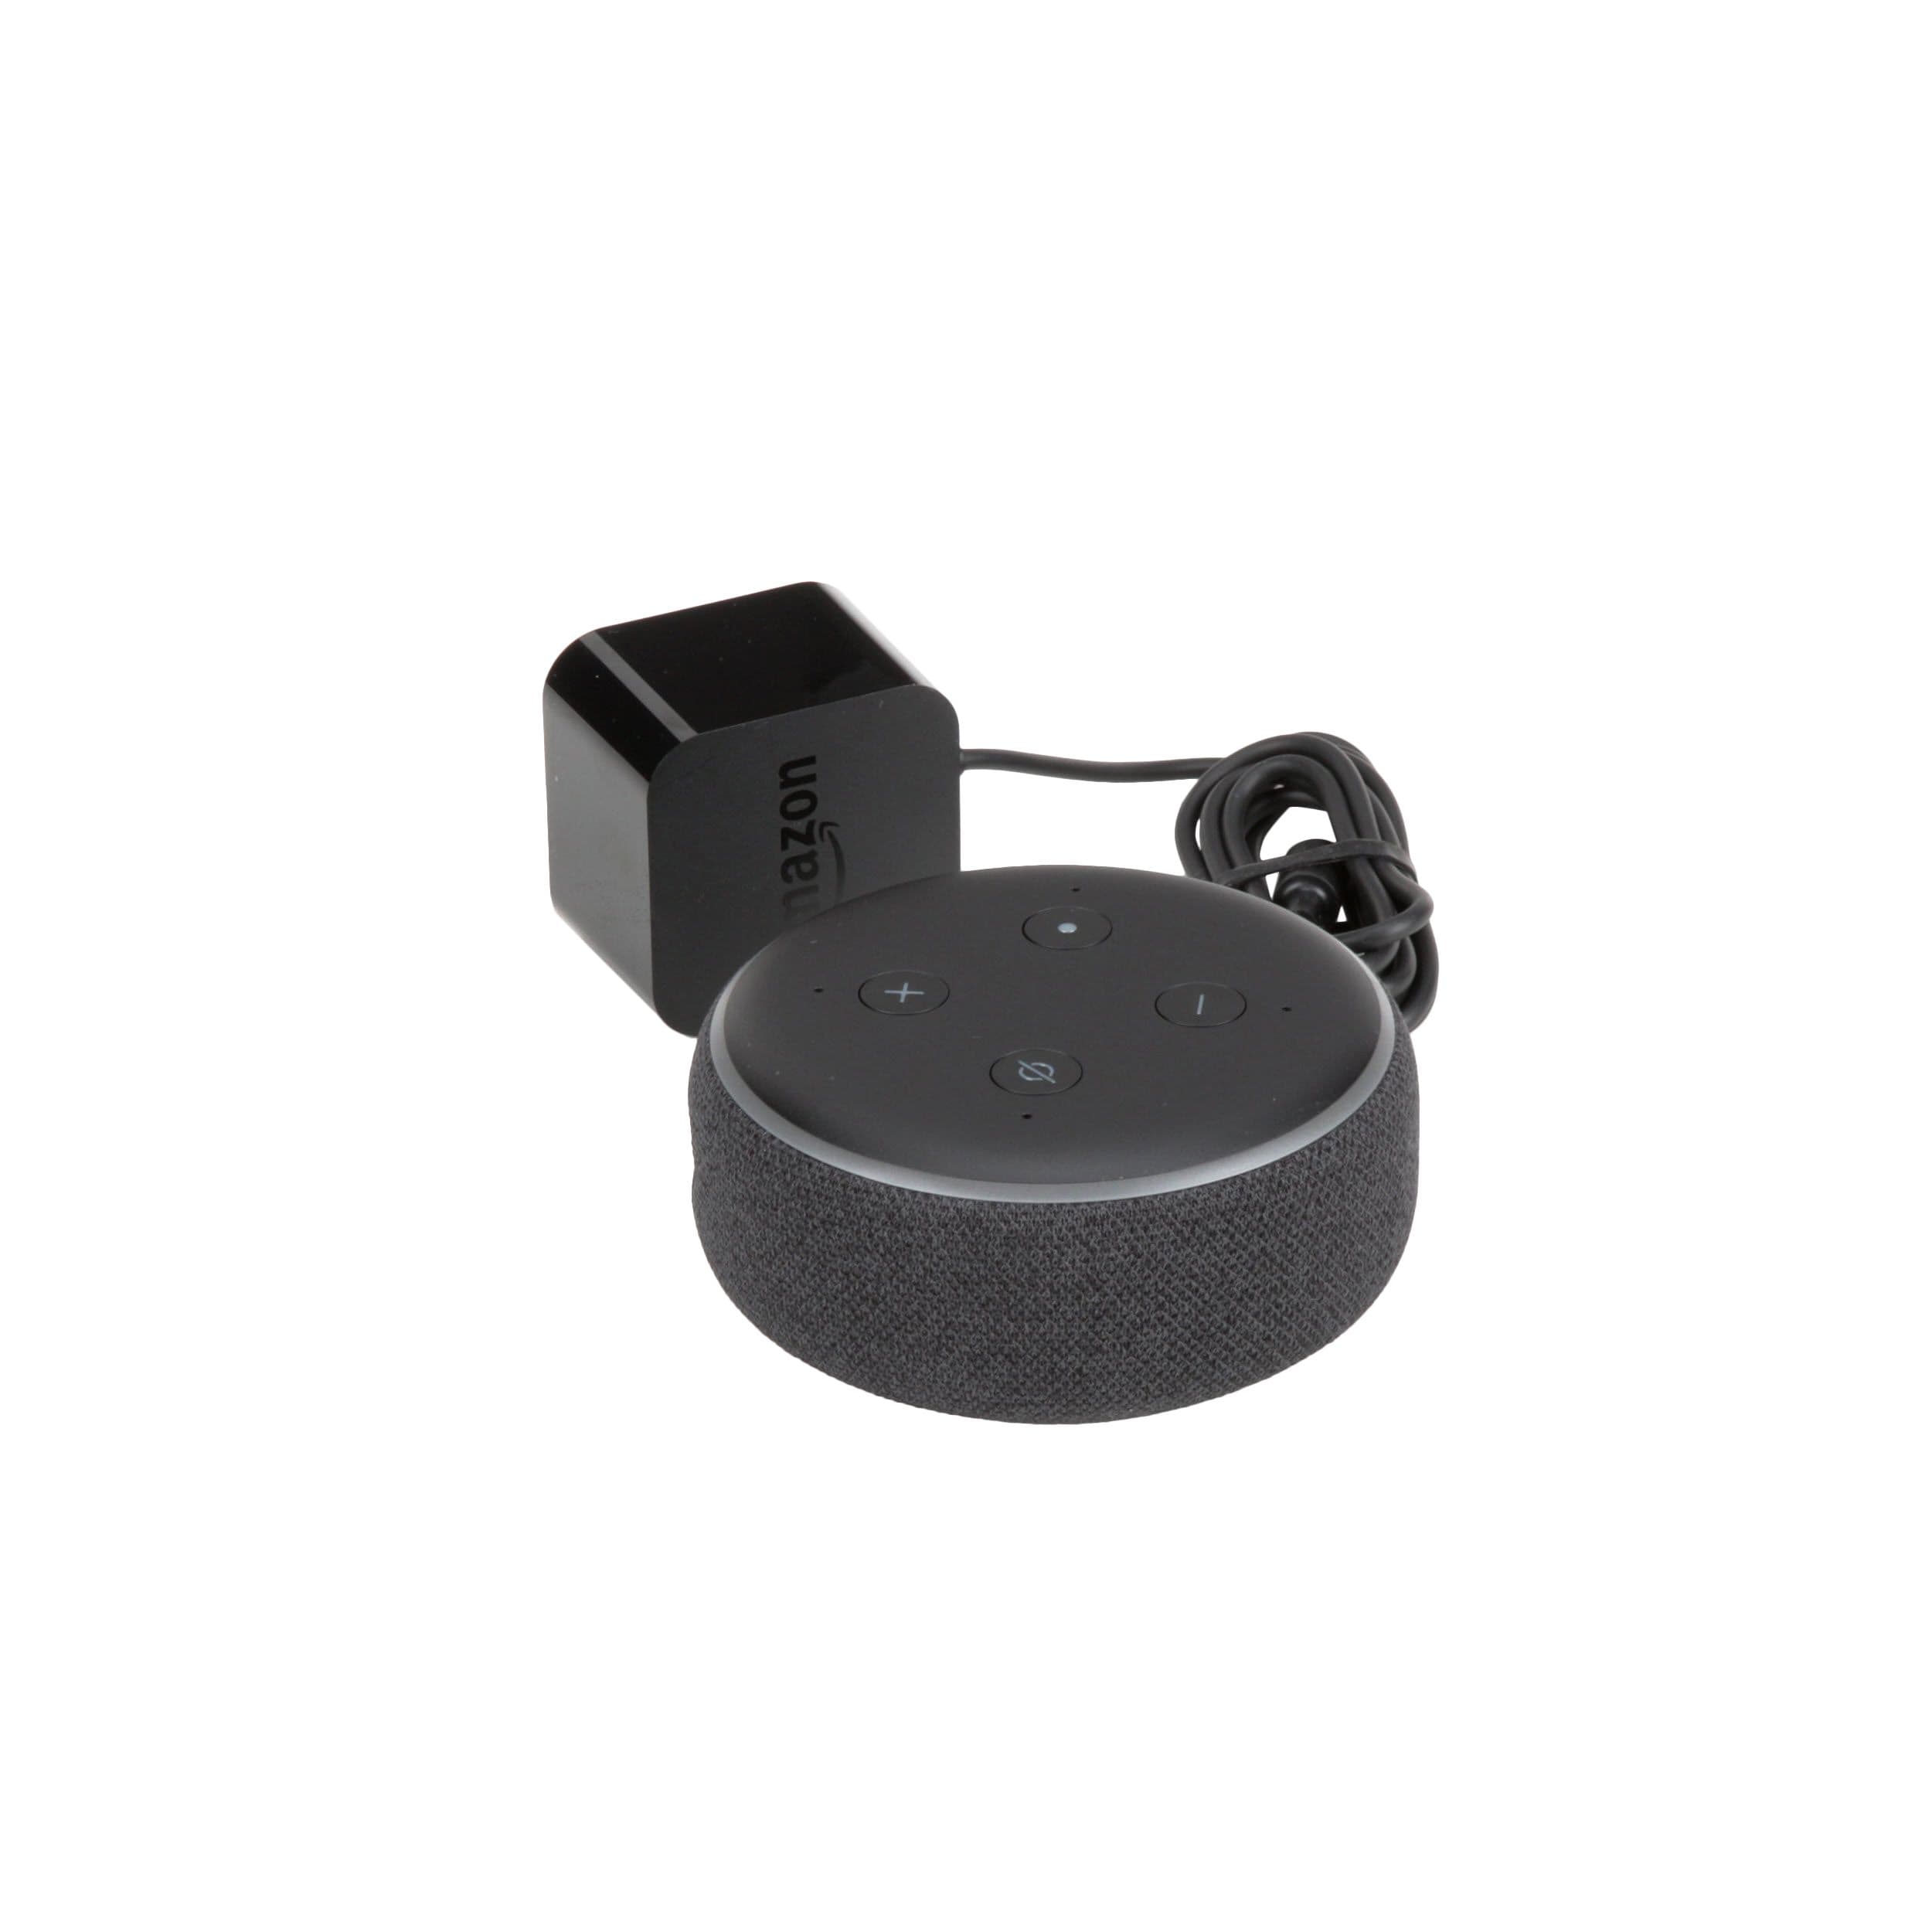 Echo Dot (3rd Gen) - Charcoal in the Smart Speakers